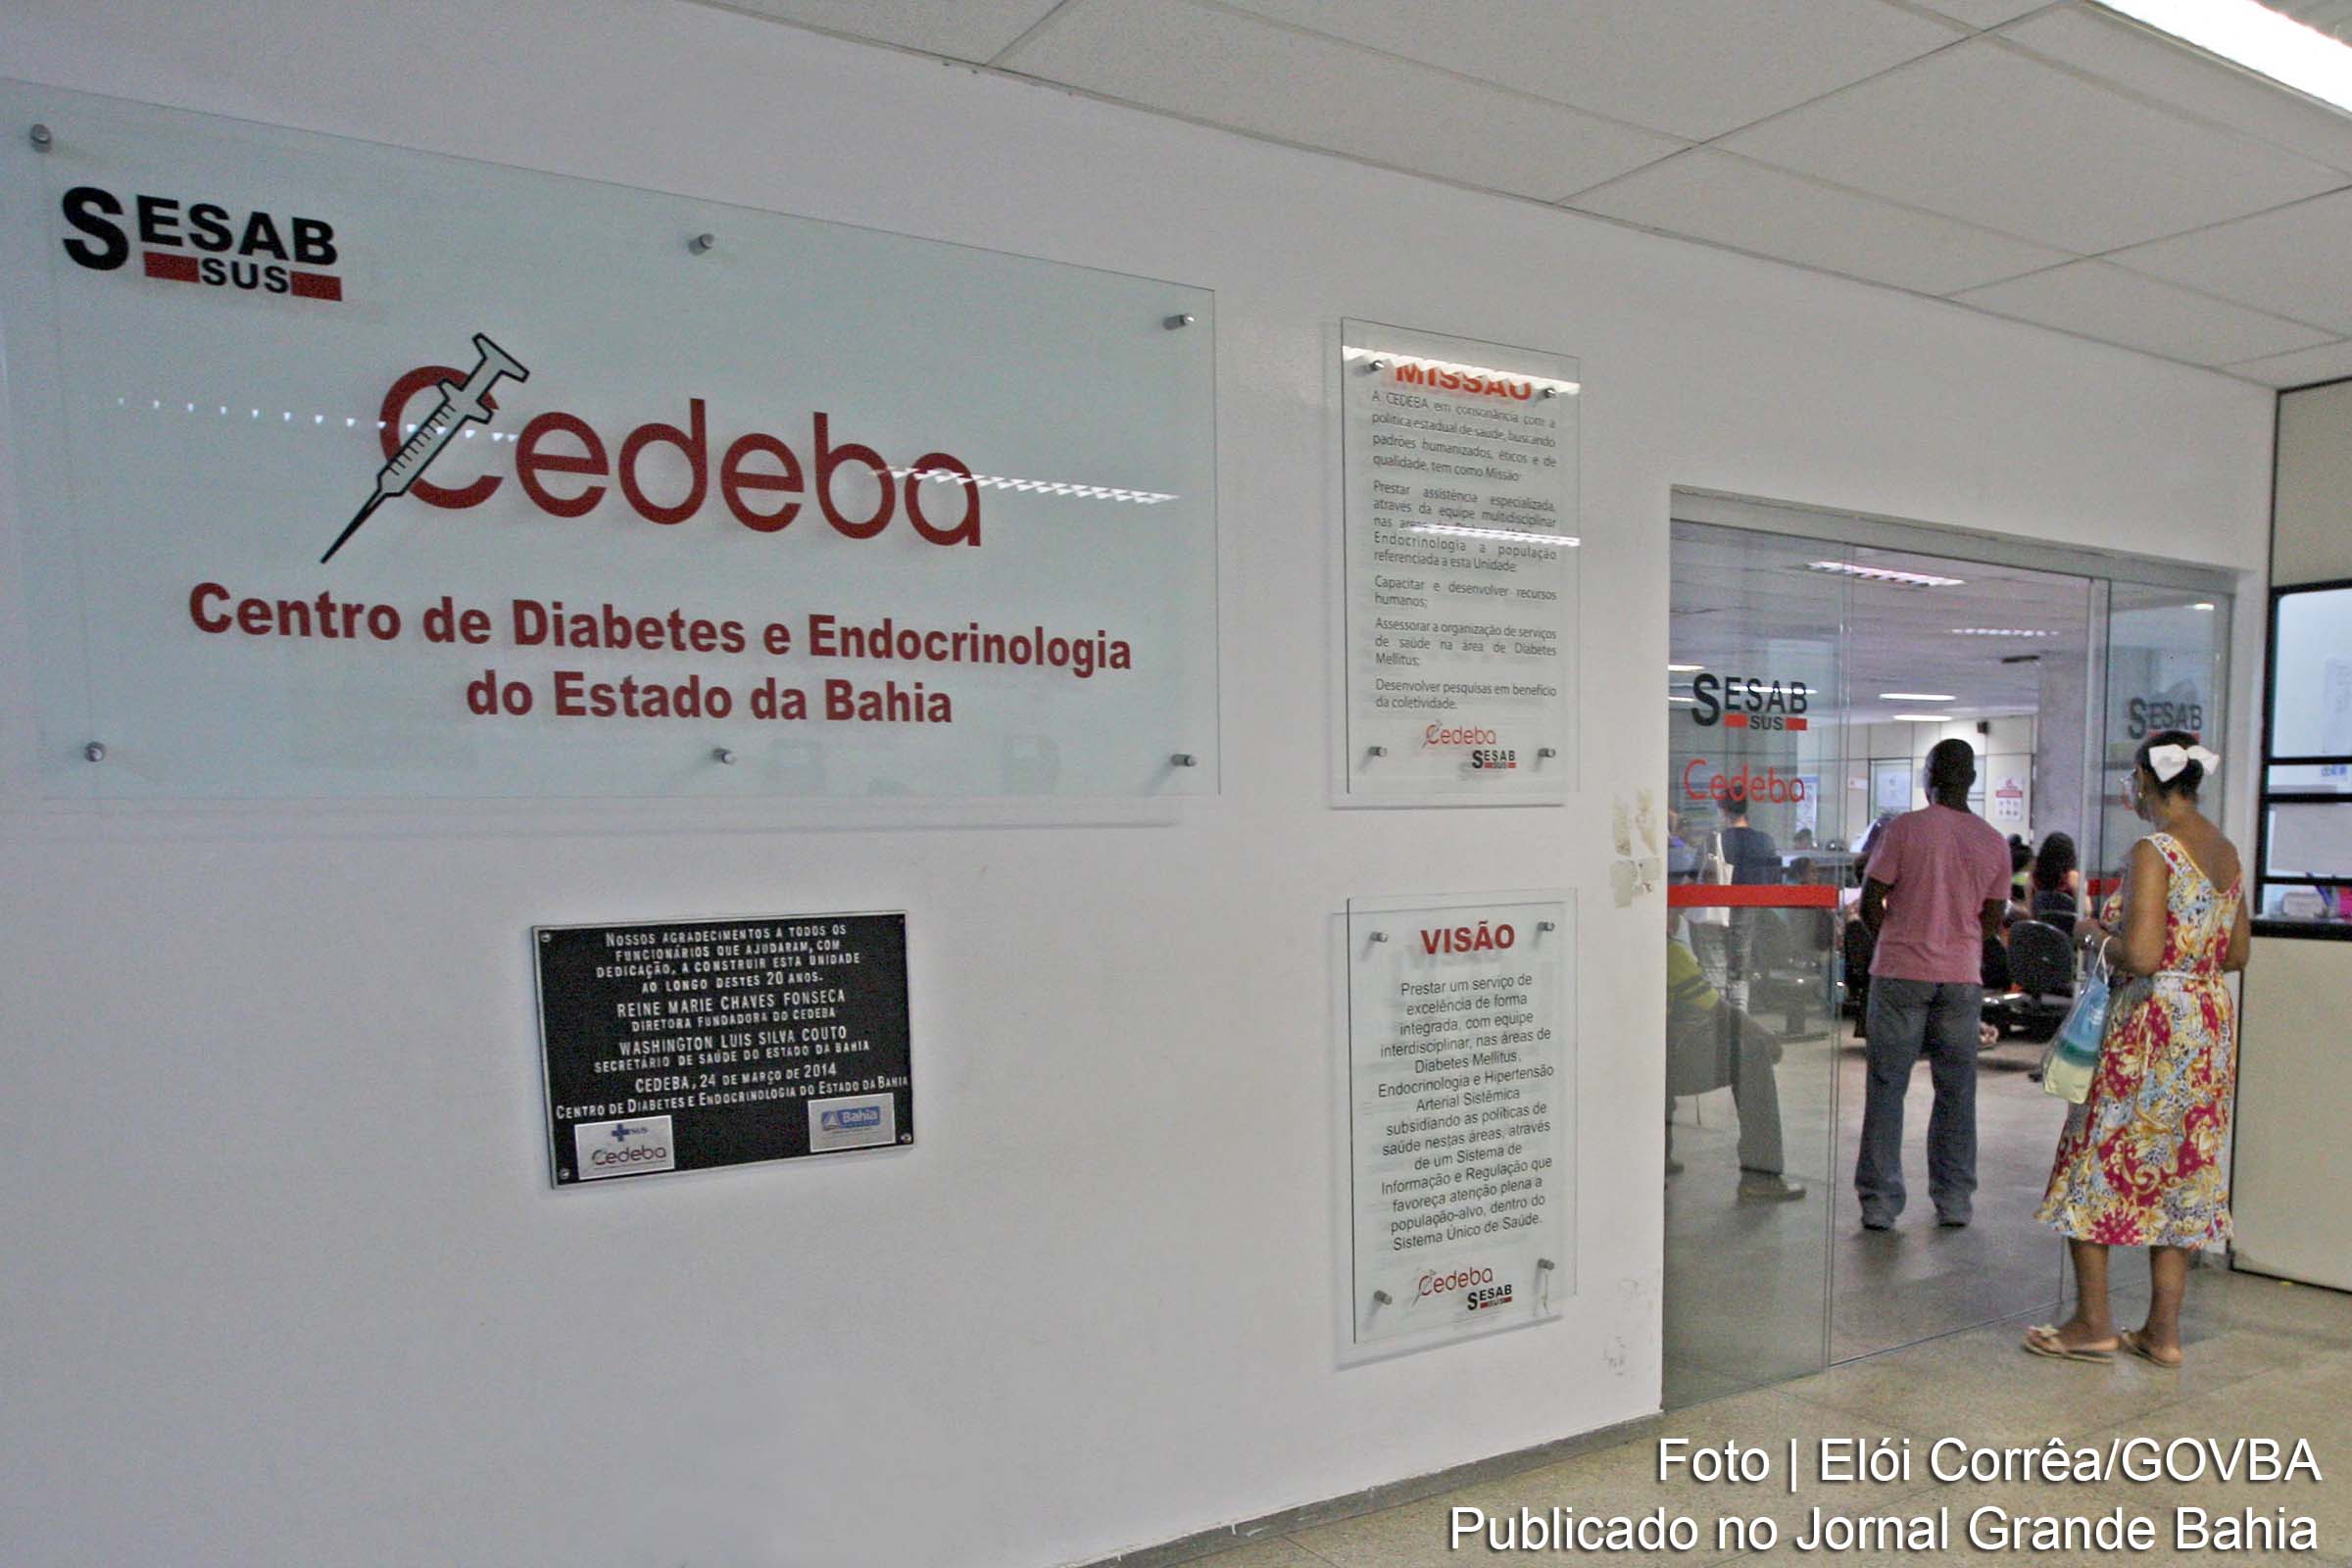 Pacientes do Cedeba participarão de programa internacional de prevenção.